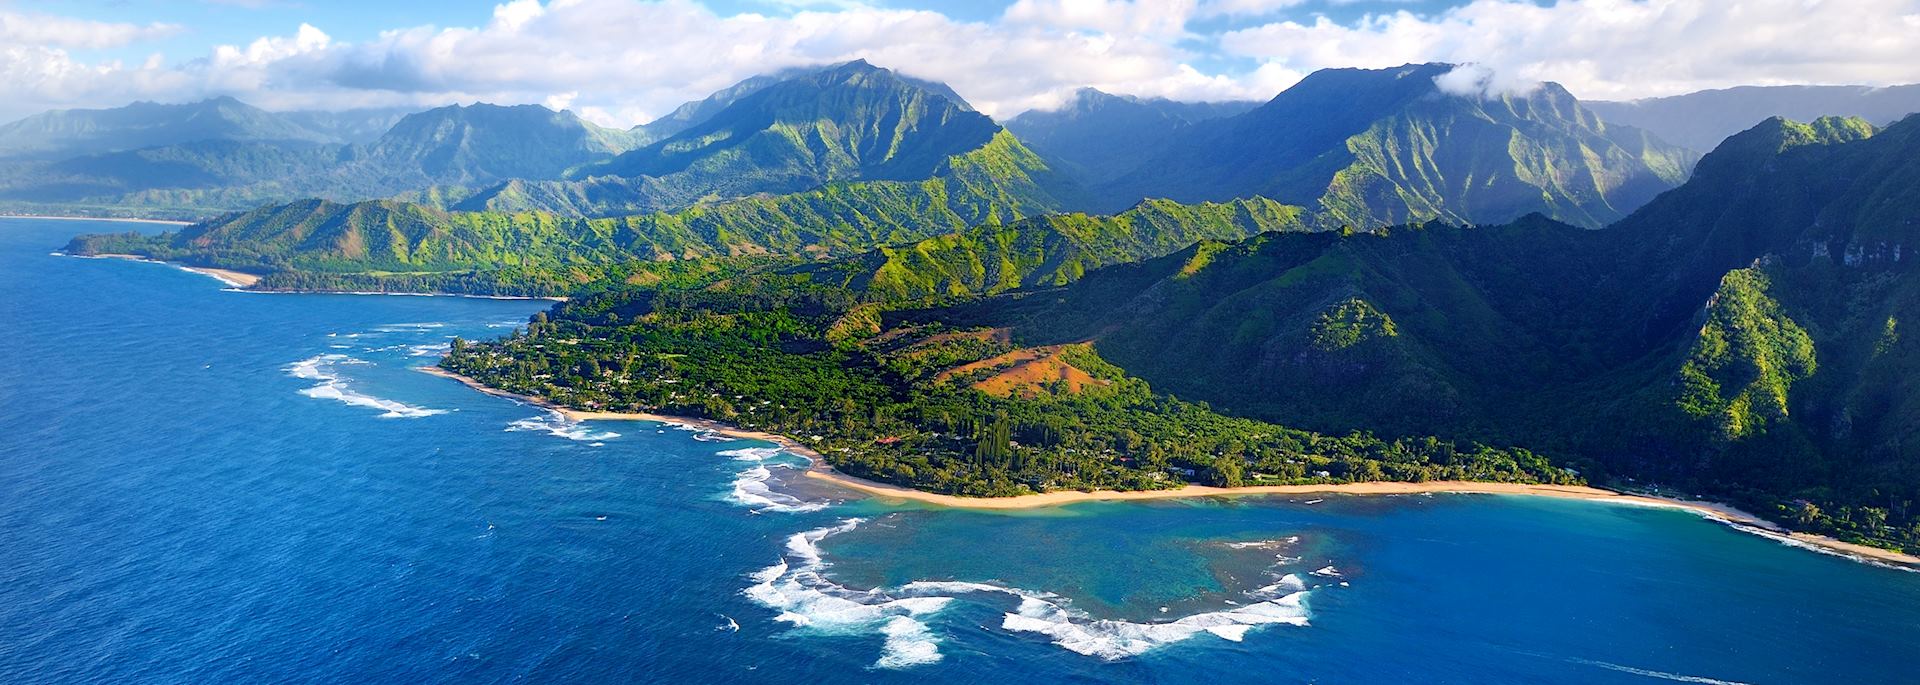 Nā Pali coastline, Kauaʻi